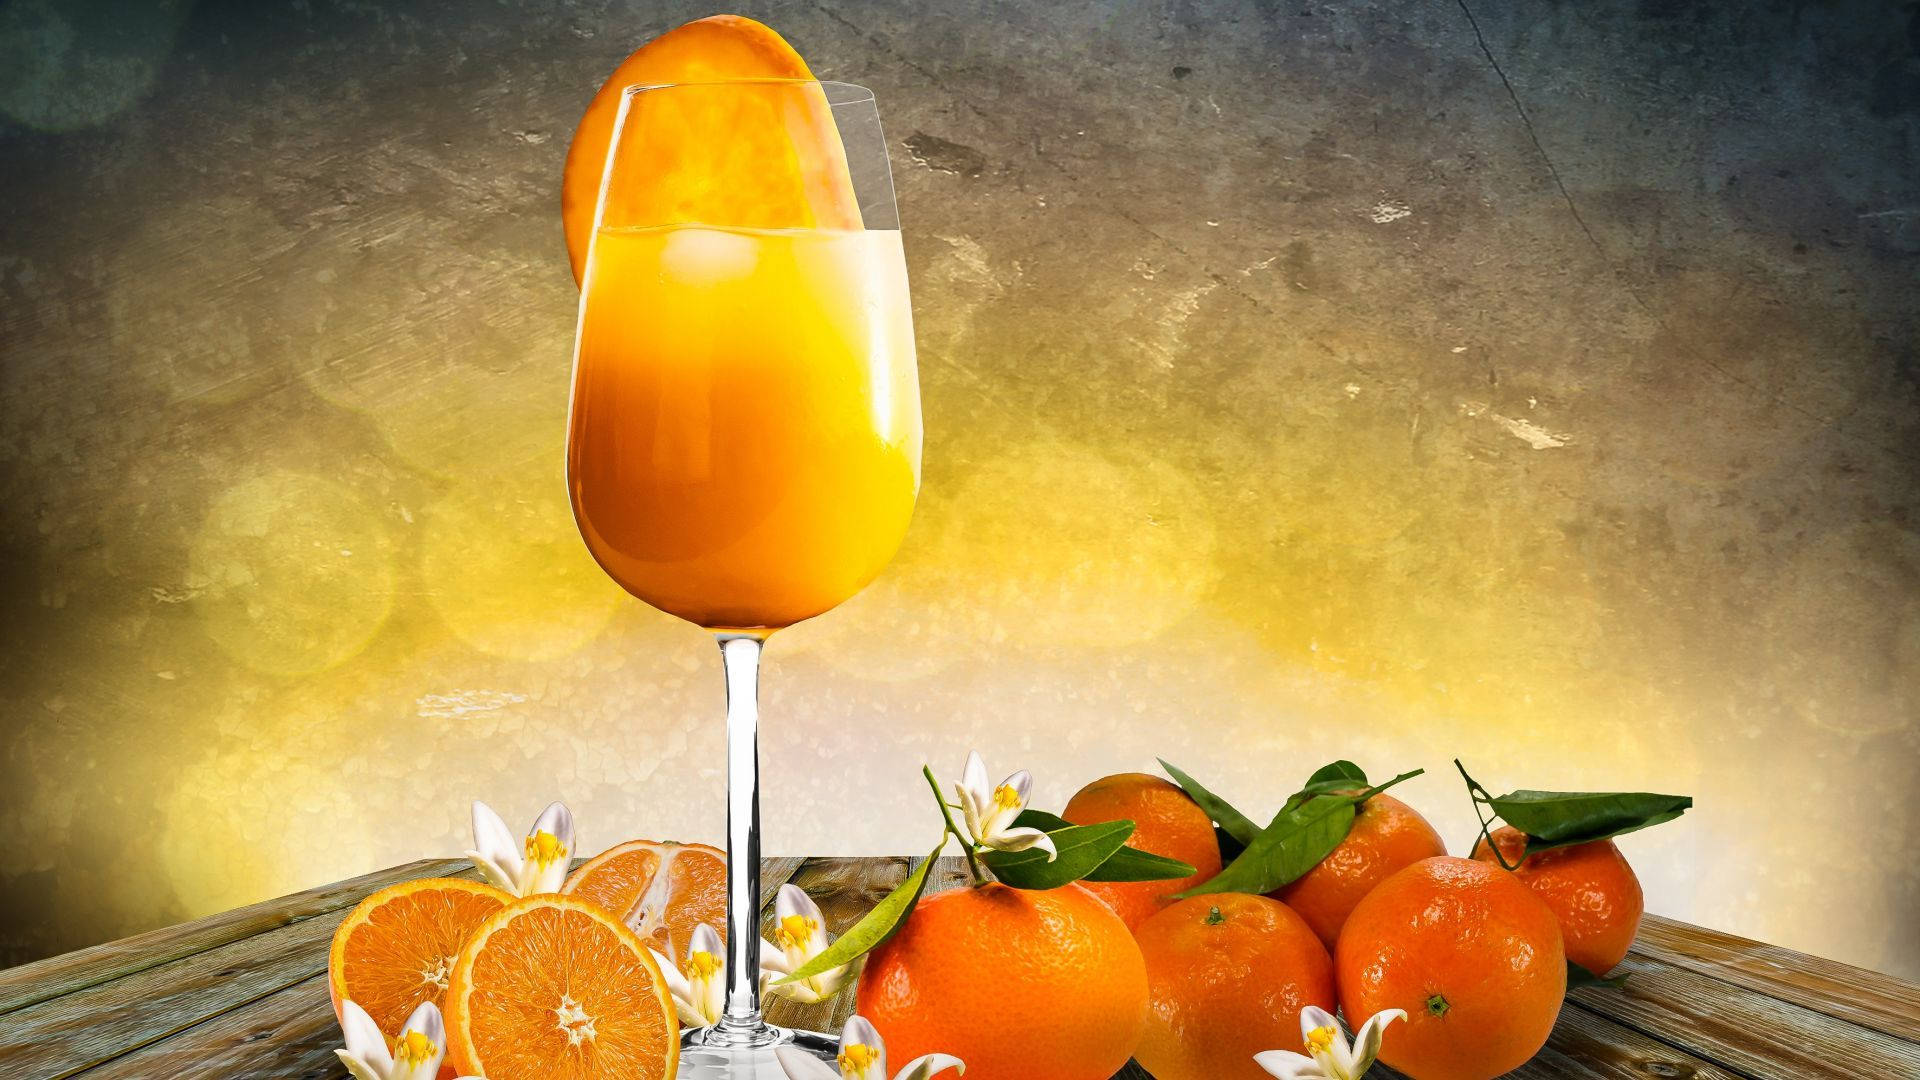 Orange Fruit In A Glass